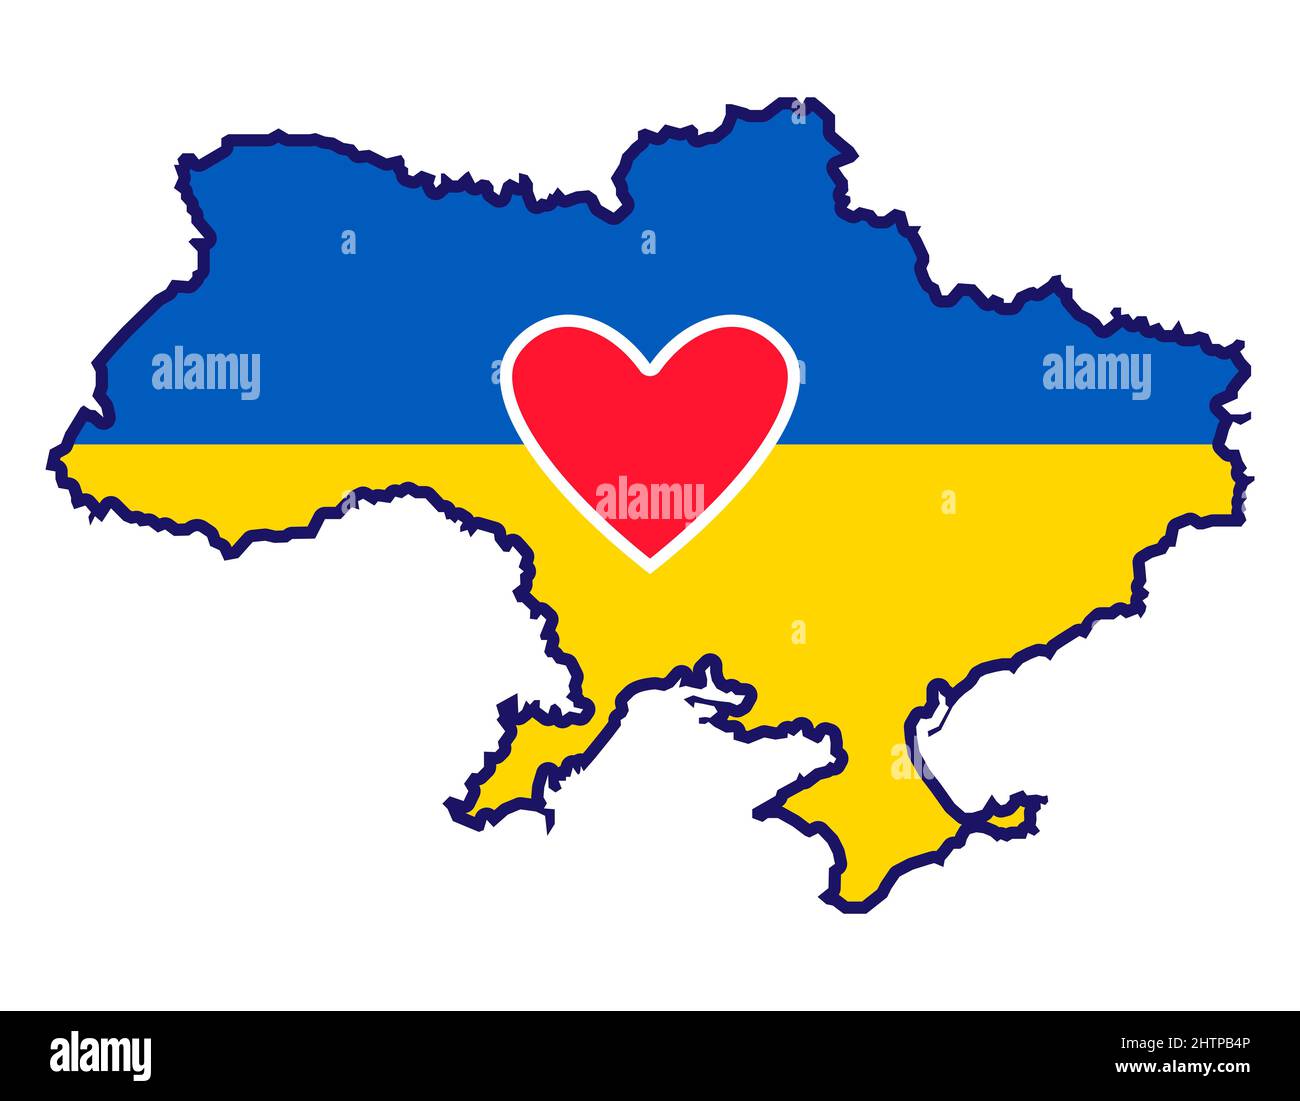 Carte de l'Ukraine avec drapeau national et coeur rouge. Silhouette de pays. Illustration vectorielle pleine couleur Illustration de Vecteur